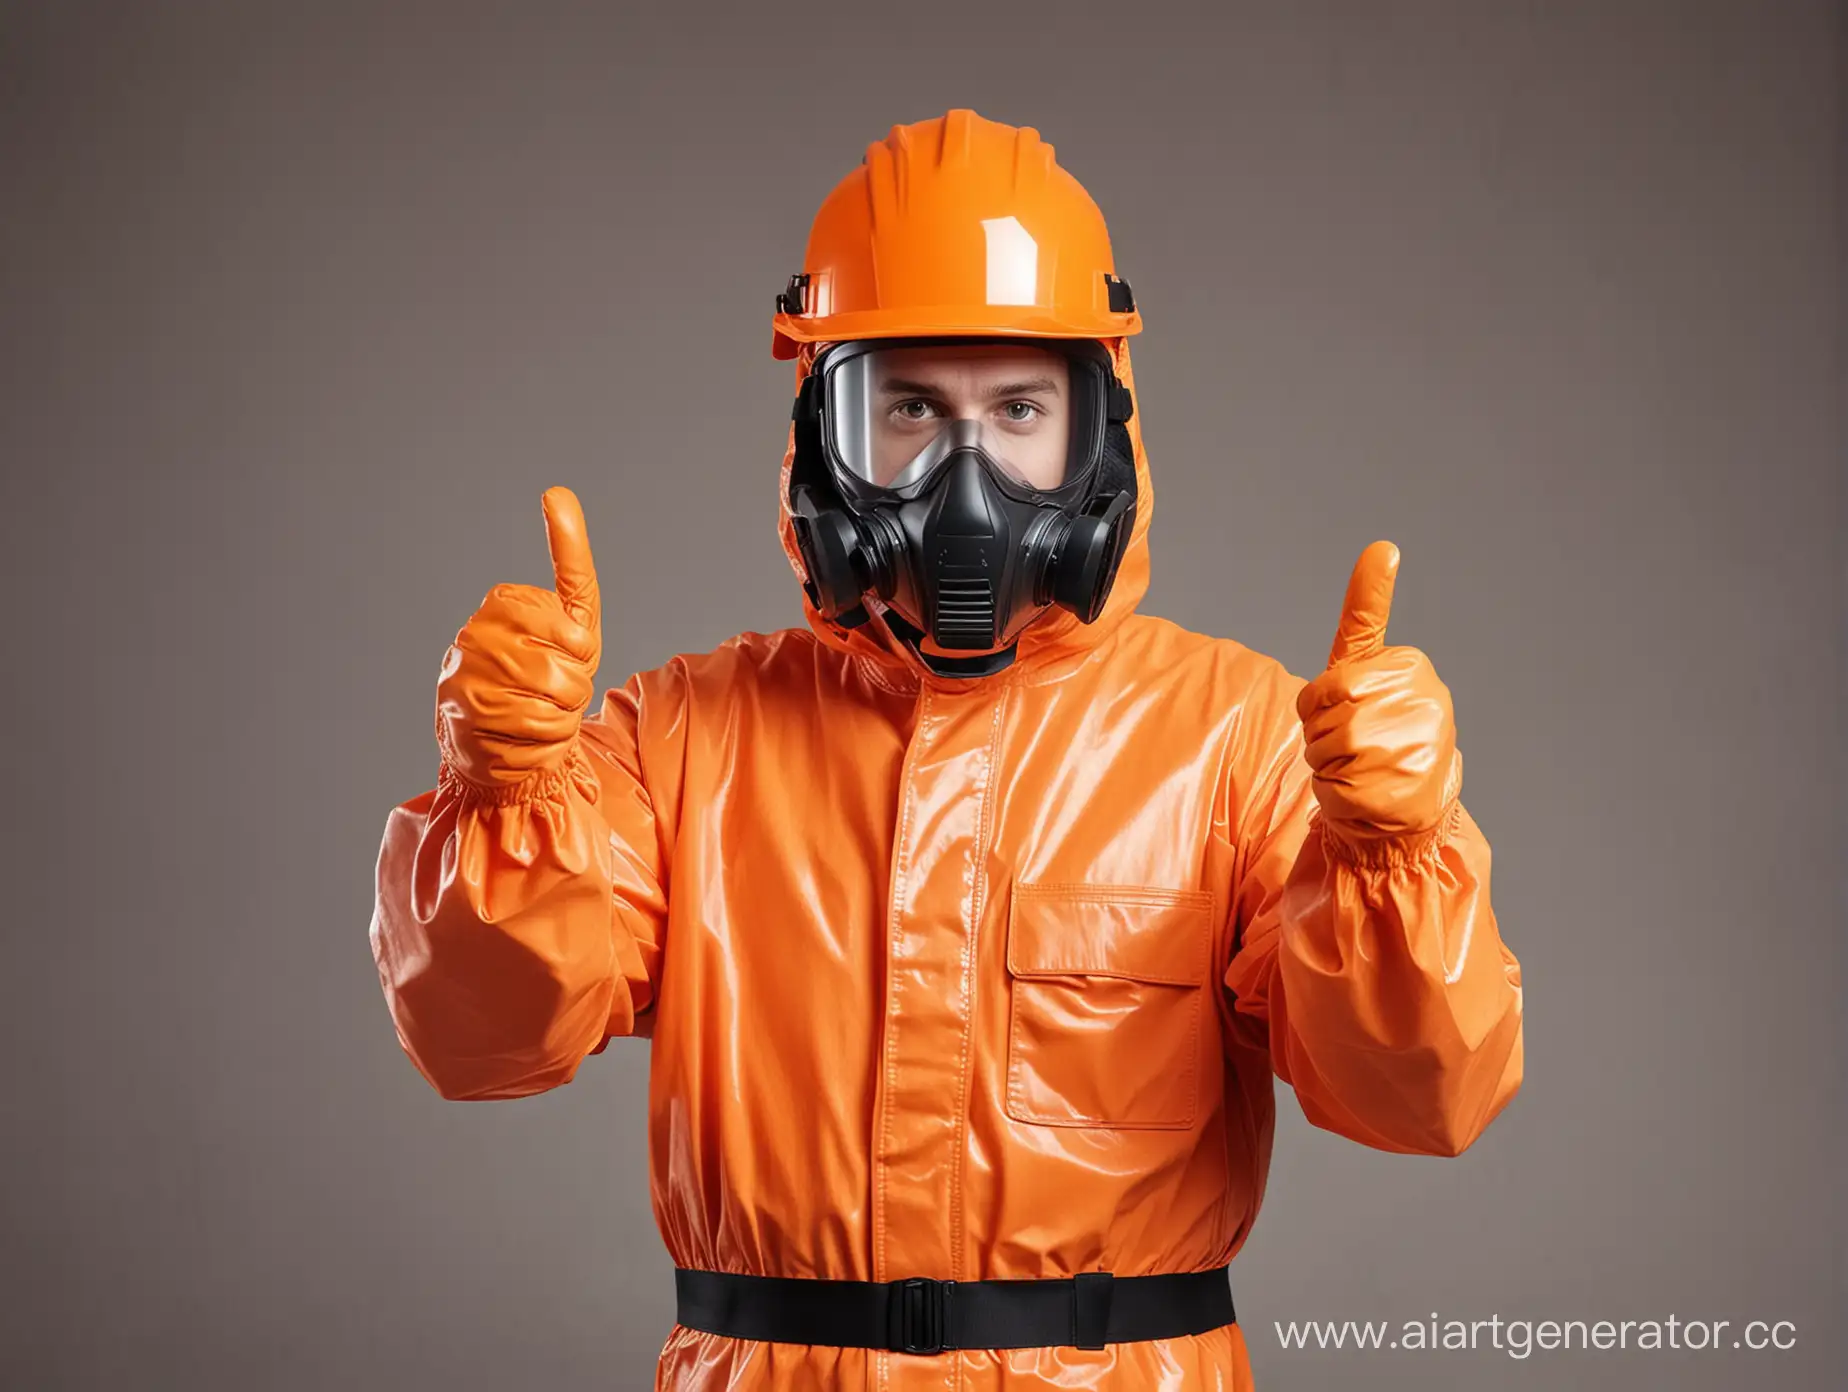 orange hazmat suit worker thumbs up in a helmet with a visor